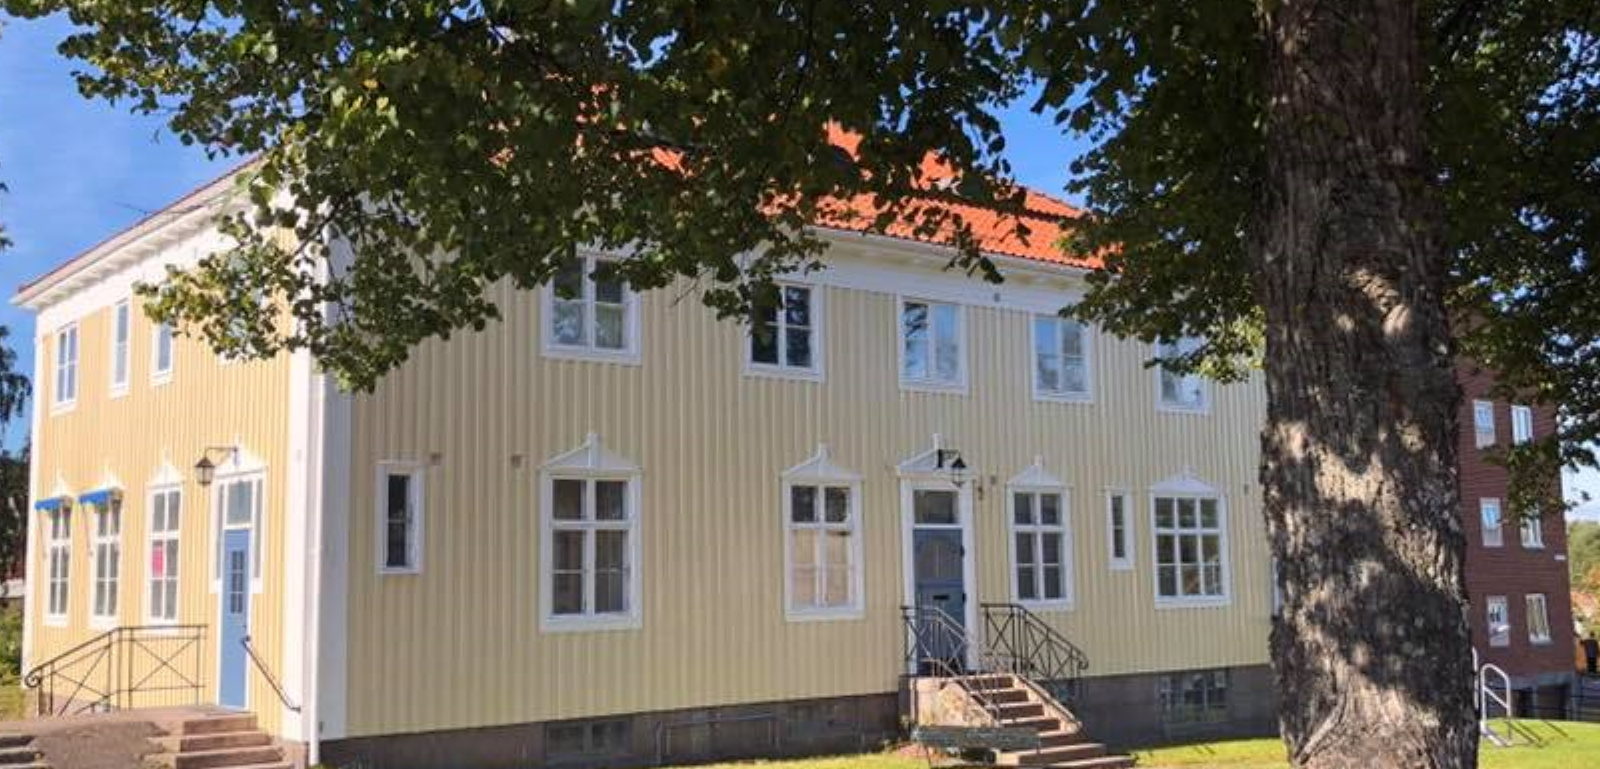 Deje hostel in Värmland